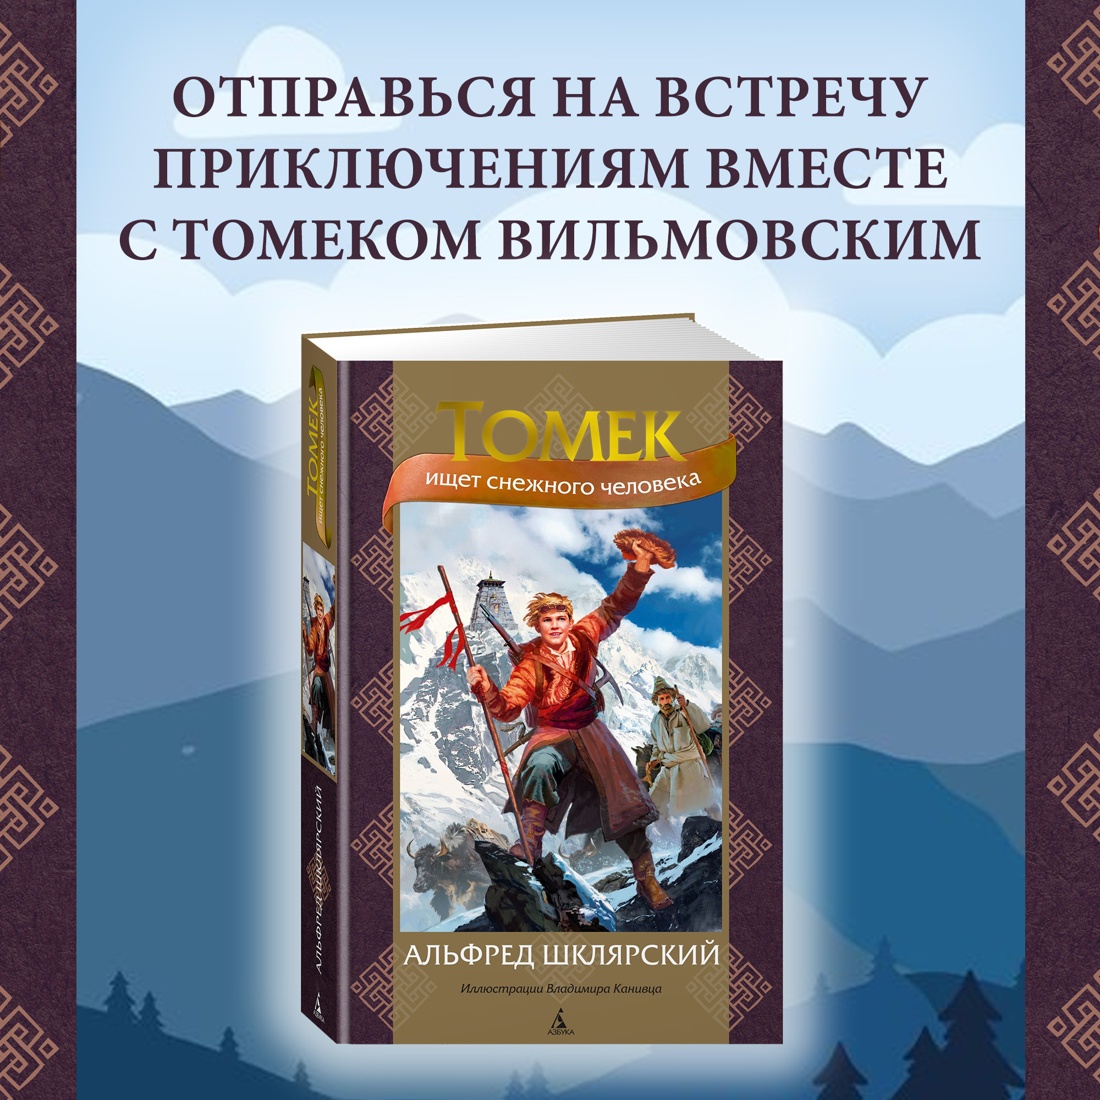 Промо материал к книге "Томек ищет снежного человека" №0